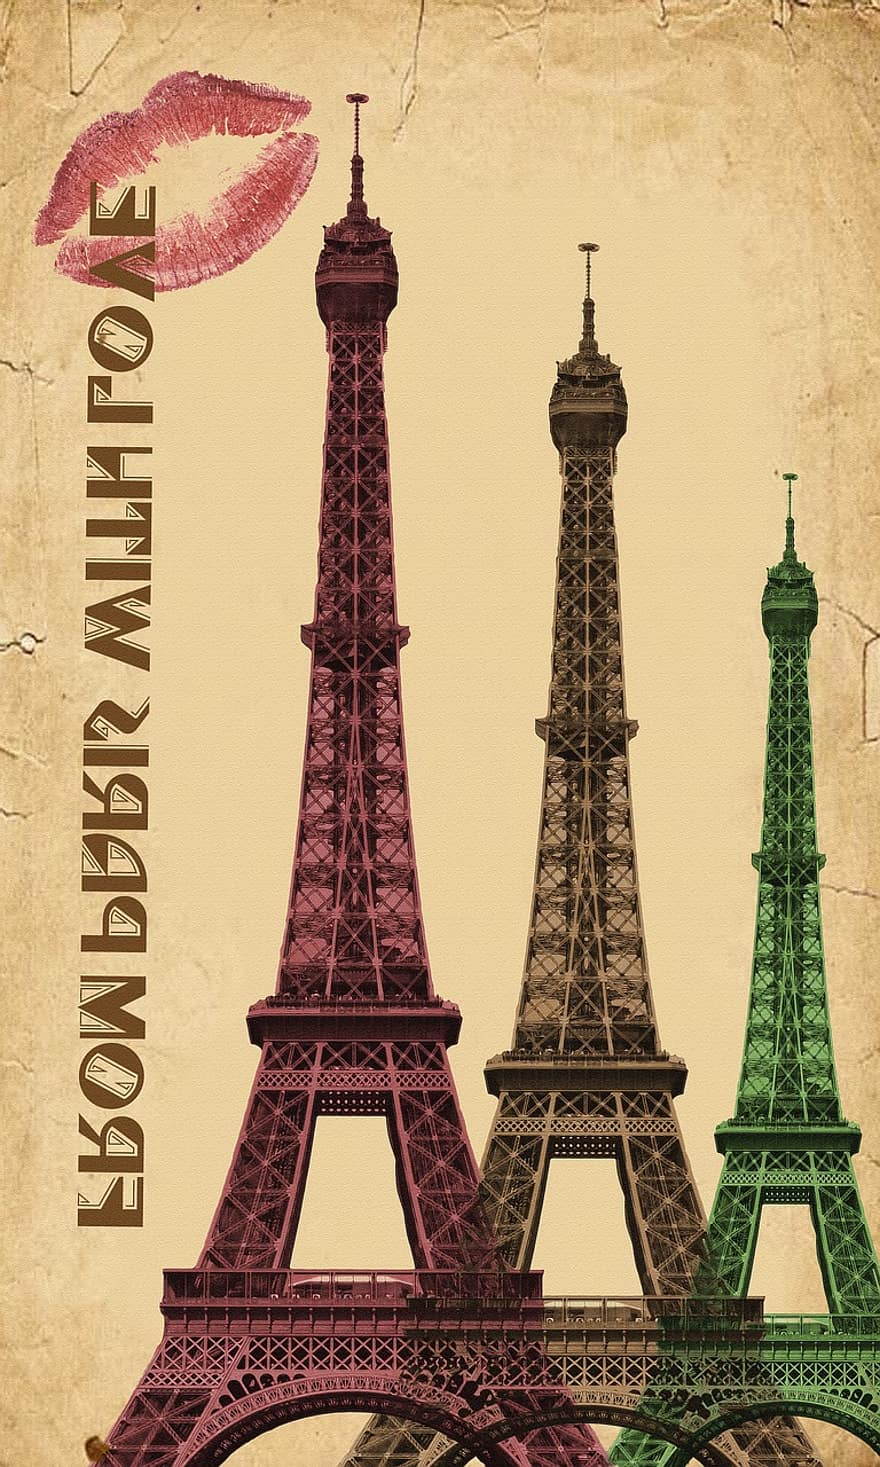 فرنسا ، باريس ، باريس، فرنسا ، مدينة ، معلم معروف ، السفر ، أوروبا ، هندسة معمارية ، فرنسي ، برج ، مشهور